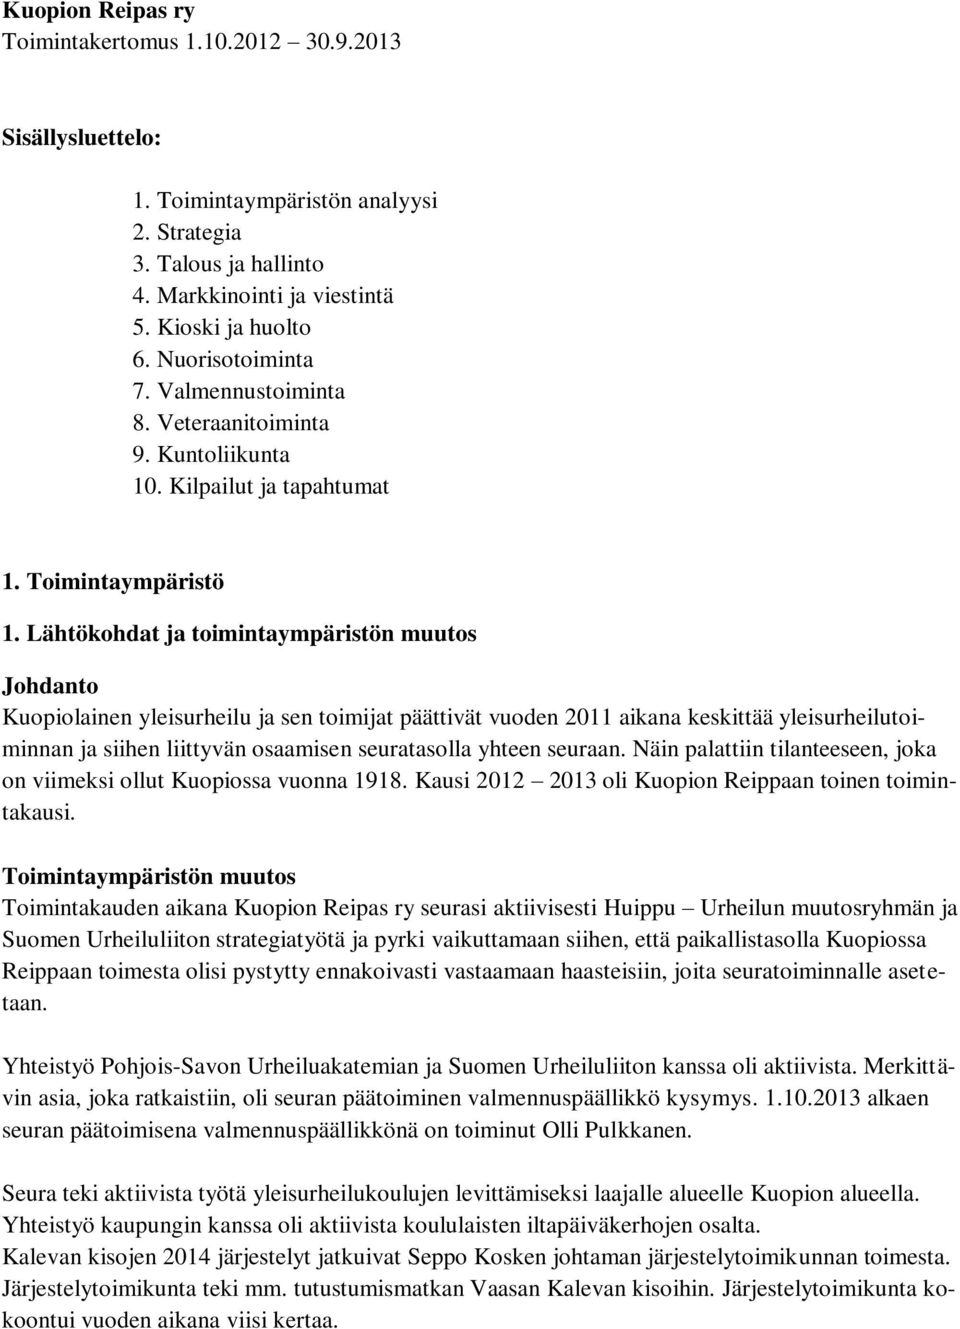 Lähtökohdat ja toimintaympäristön muutos Johdanto Kuopiolainen yleisurheilu ja sen toimijat päättivät vuoden 2011 aikana keskittää yleisurheilutoiminnan ja siihen liittyvän osaamisen seuratasolla